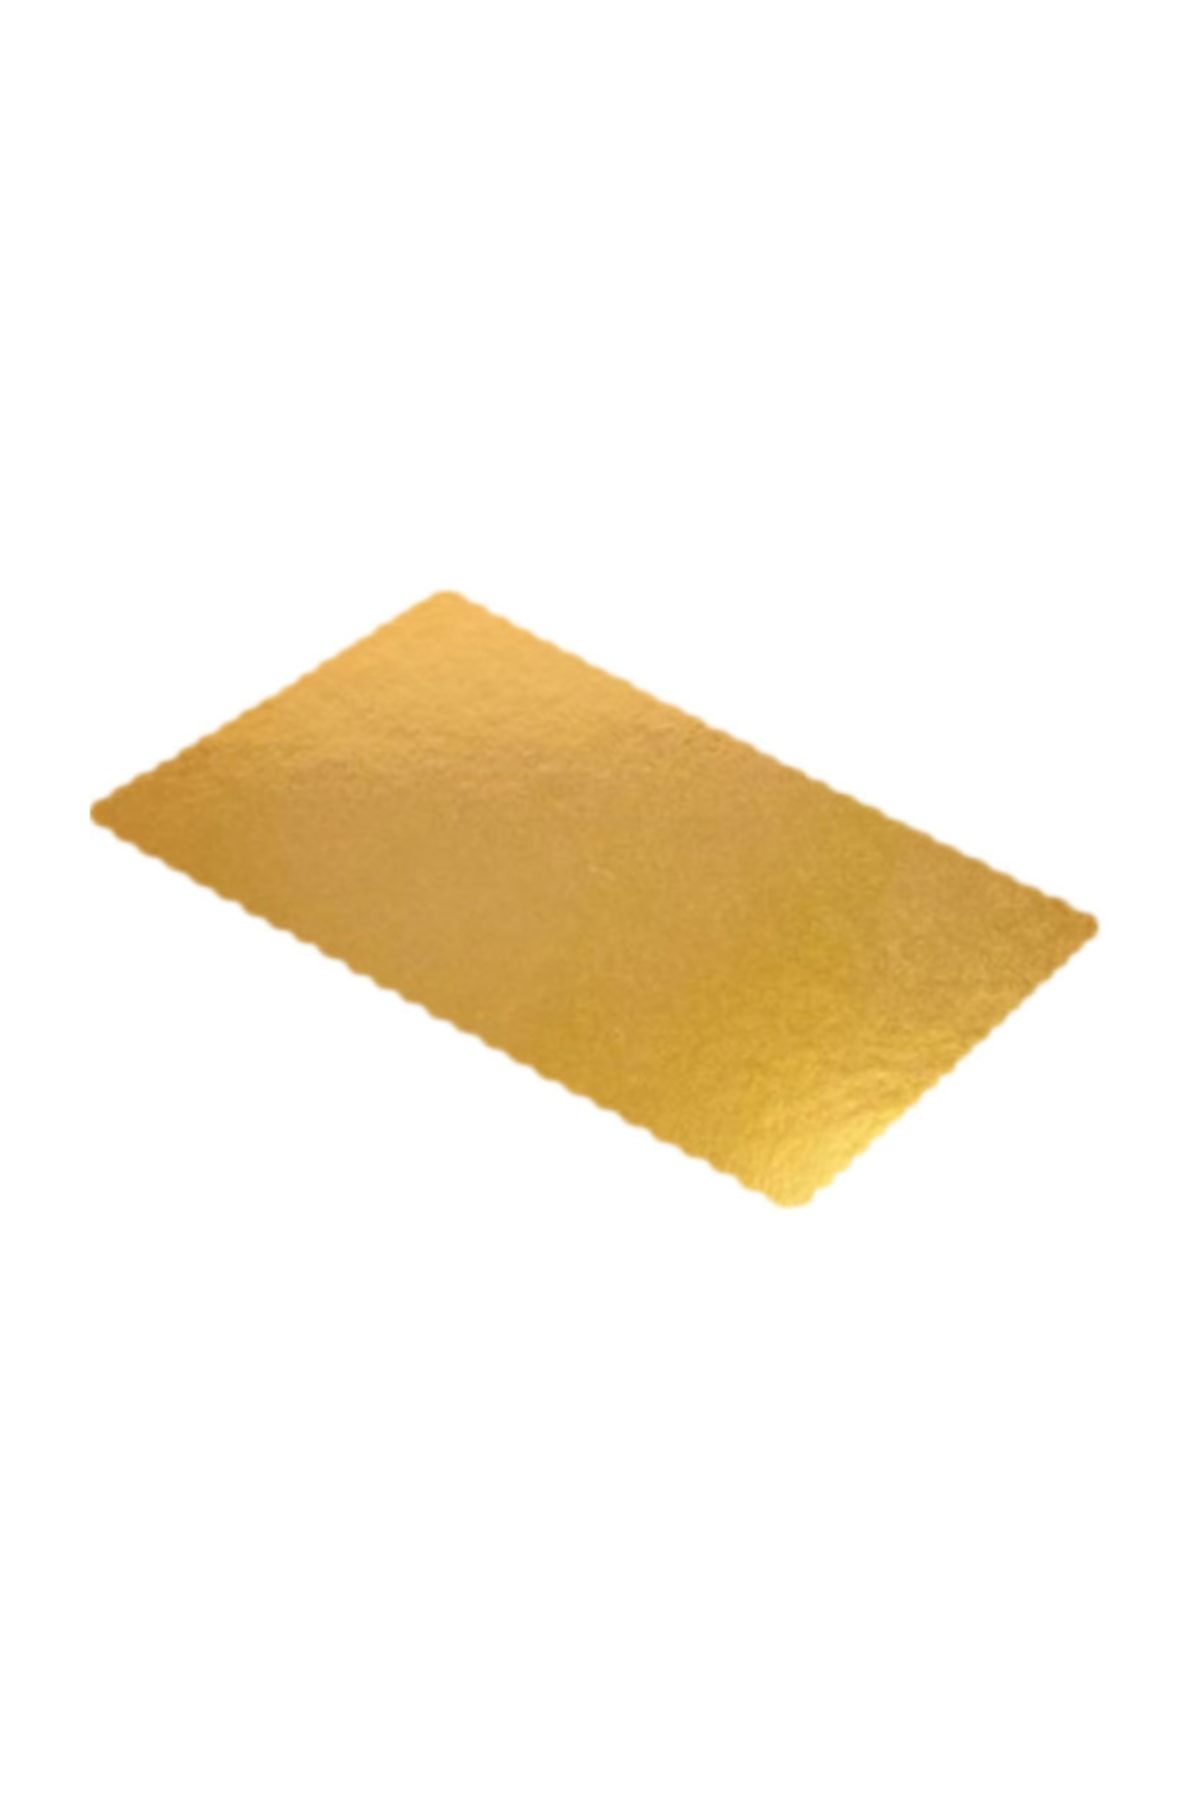 TT Tahtakale Toptancıları Karton Pasta Altlığı  30 x 40 cm (3 Adet)  Gold